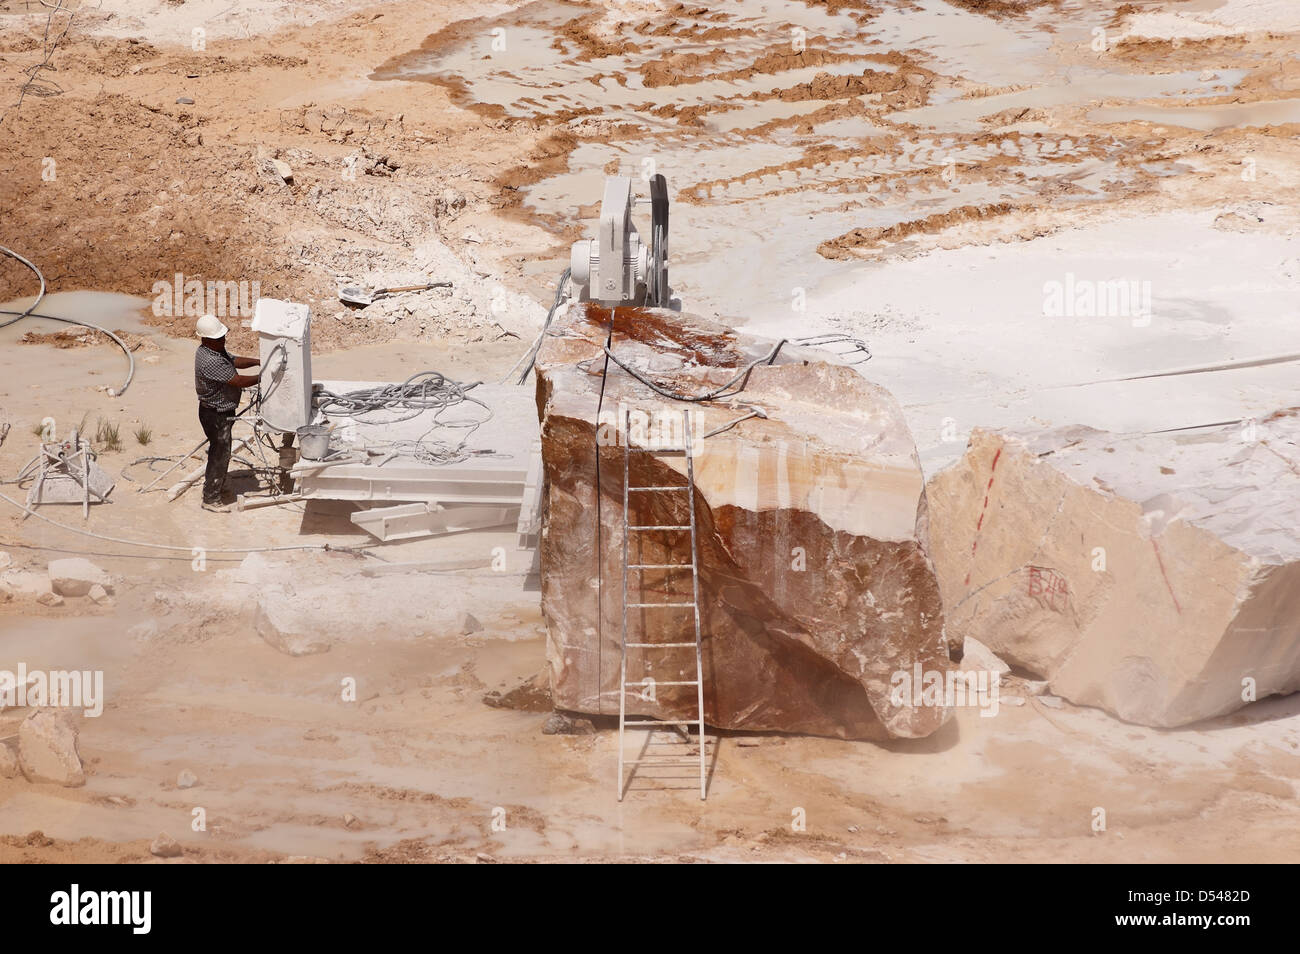 Arbeitnehmer einen Draht operativen sah in einem Marmor-Steinbruch in Alentejo, Portugal Stockfoto